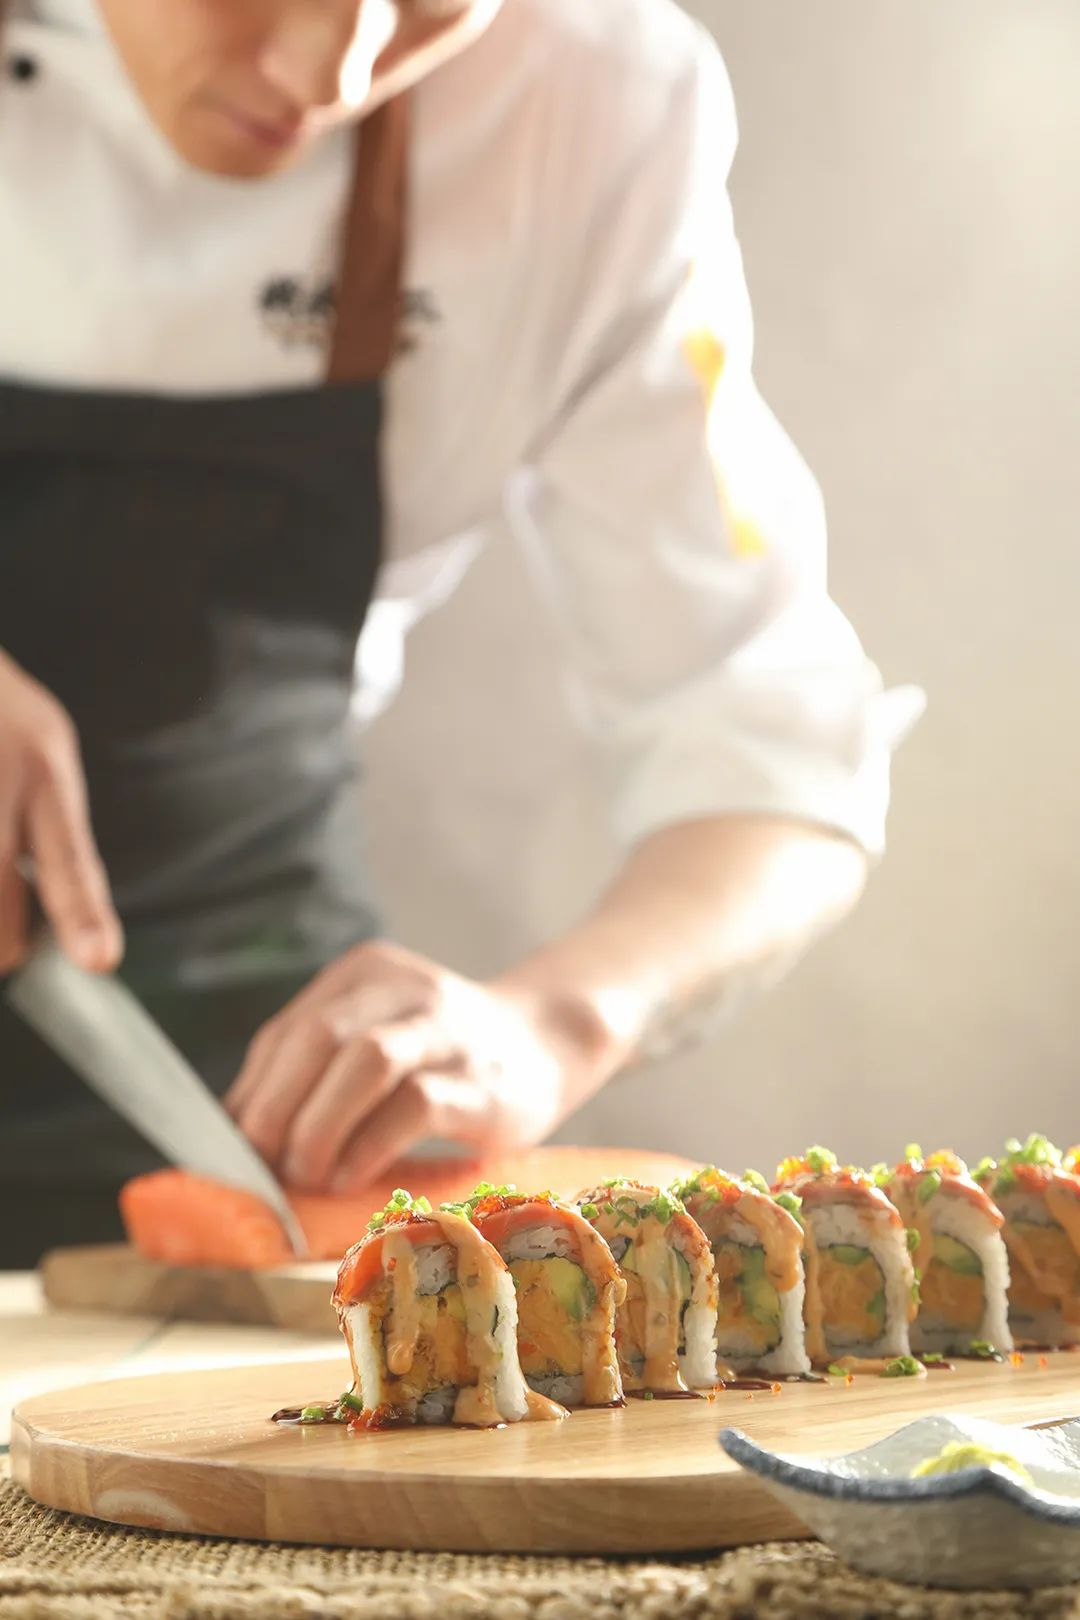 美食探店之“将太无二”新派寿司文化